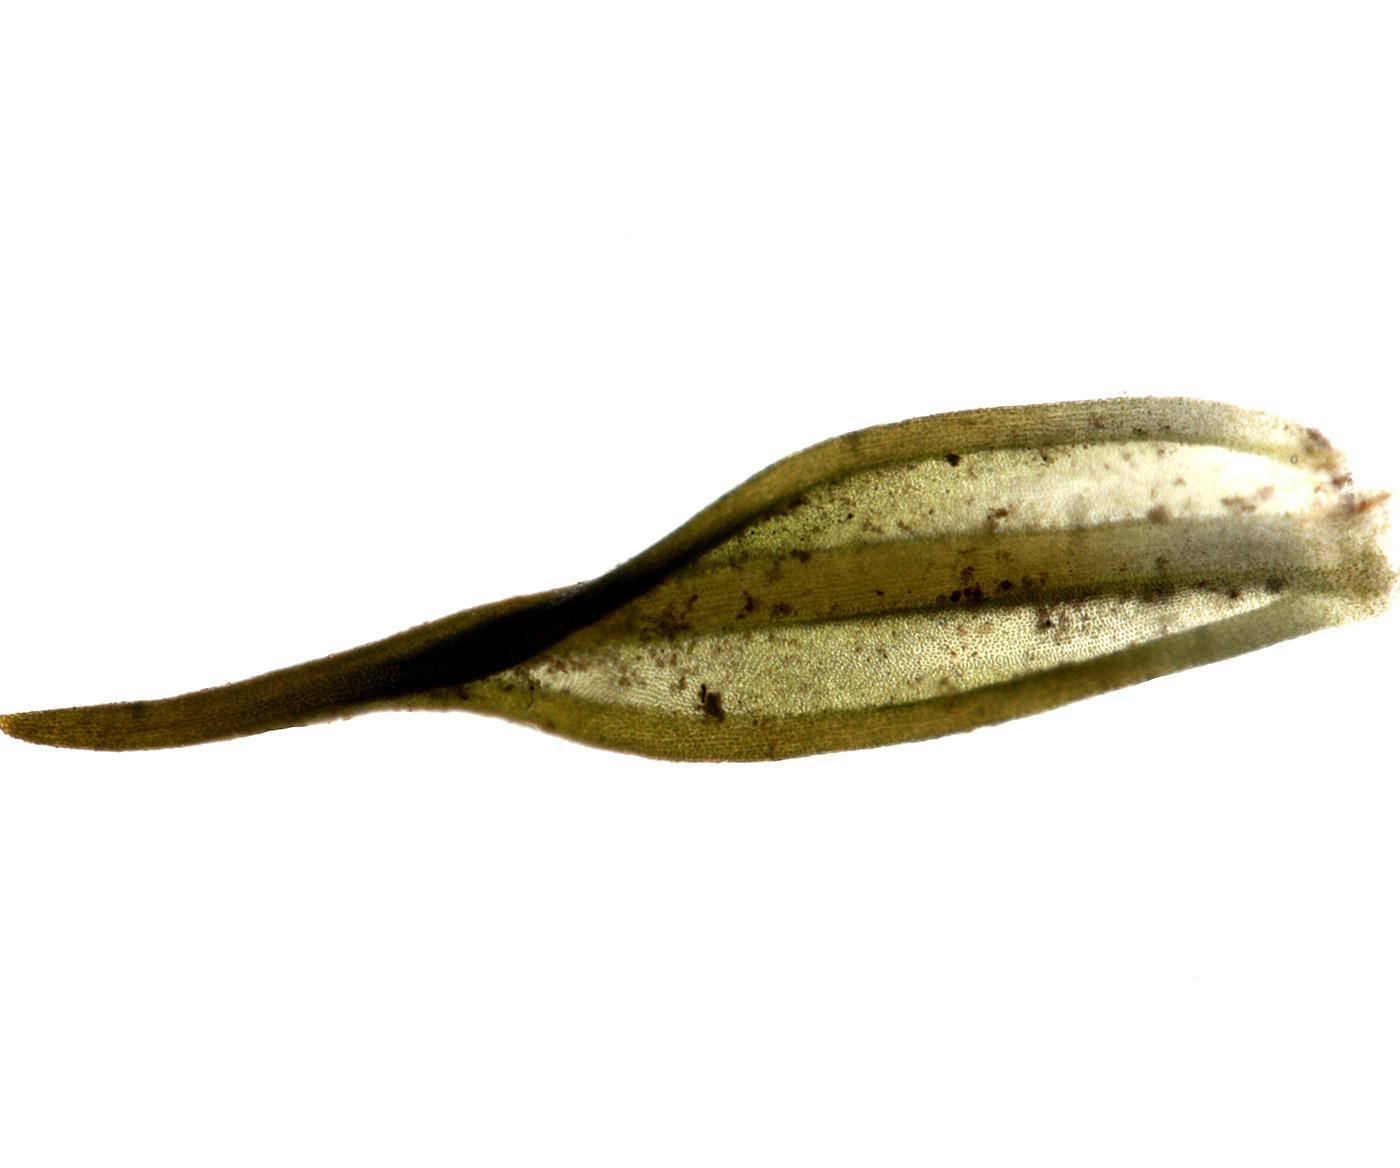 Cinclidotus  pachyloma